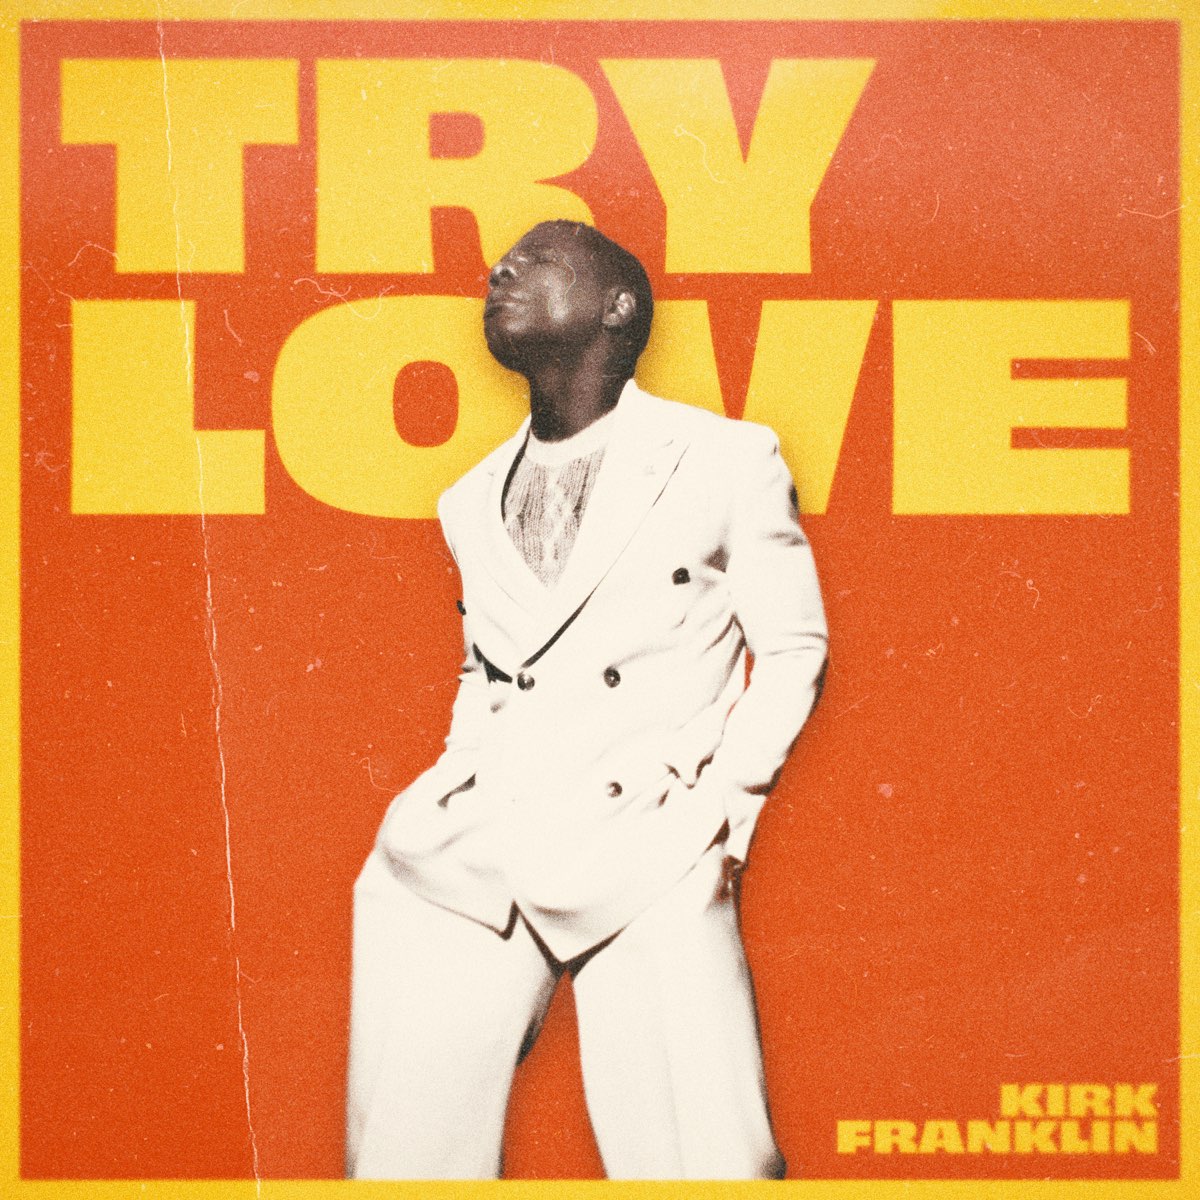 Kirk Franklin - Try Love.jpg (306 KB)